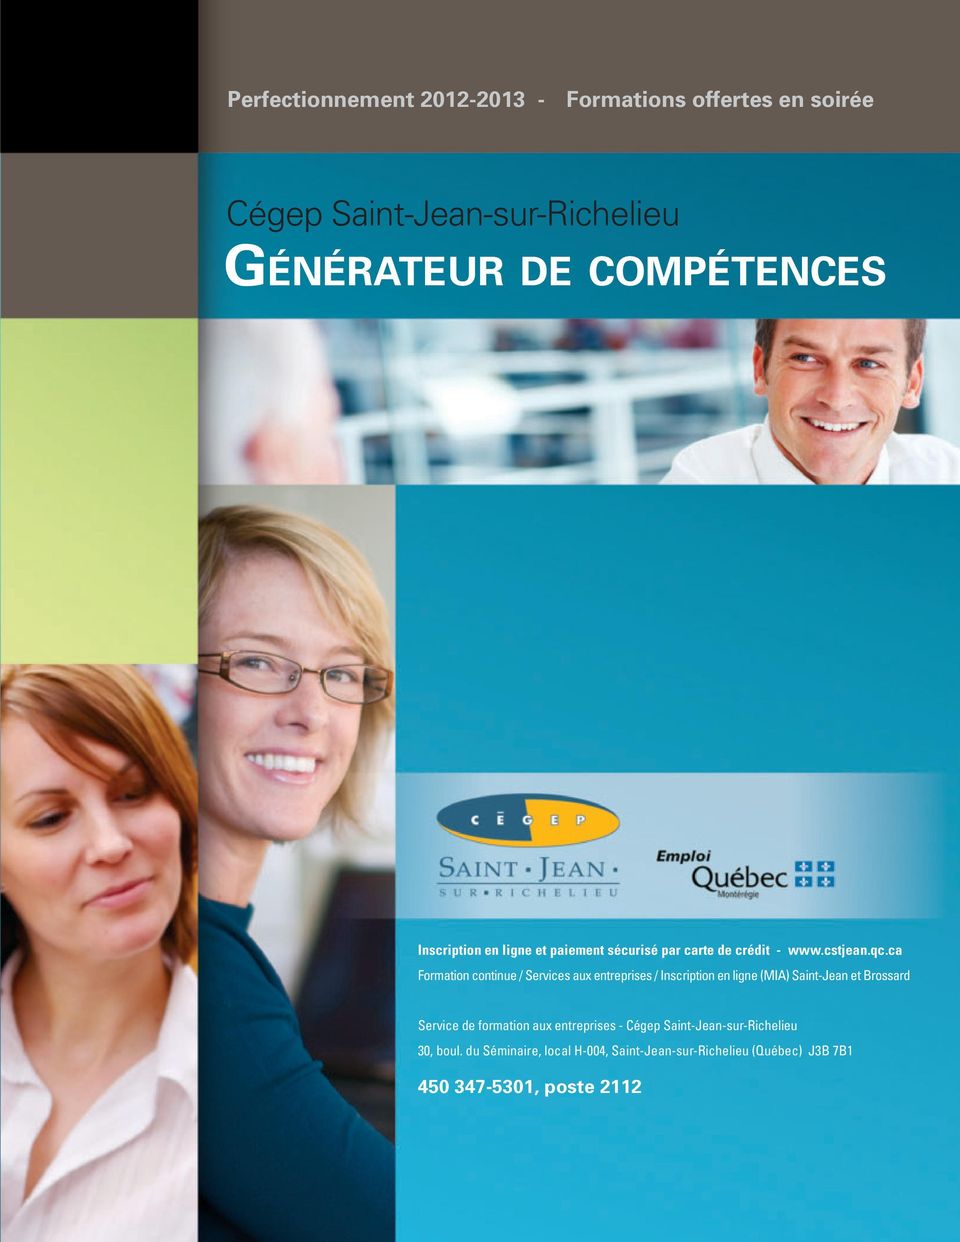 ca Formation continue / Services aux entreprises / Inscription en ligne (MIA) Saint-Jean et Brossard Service de